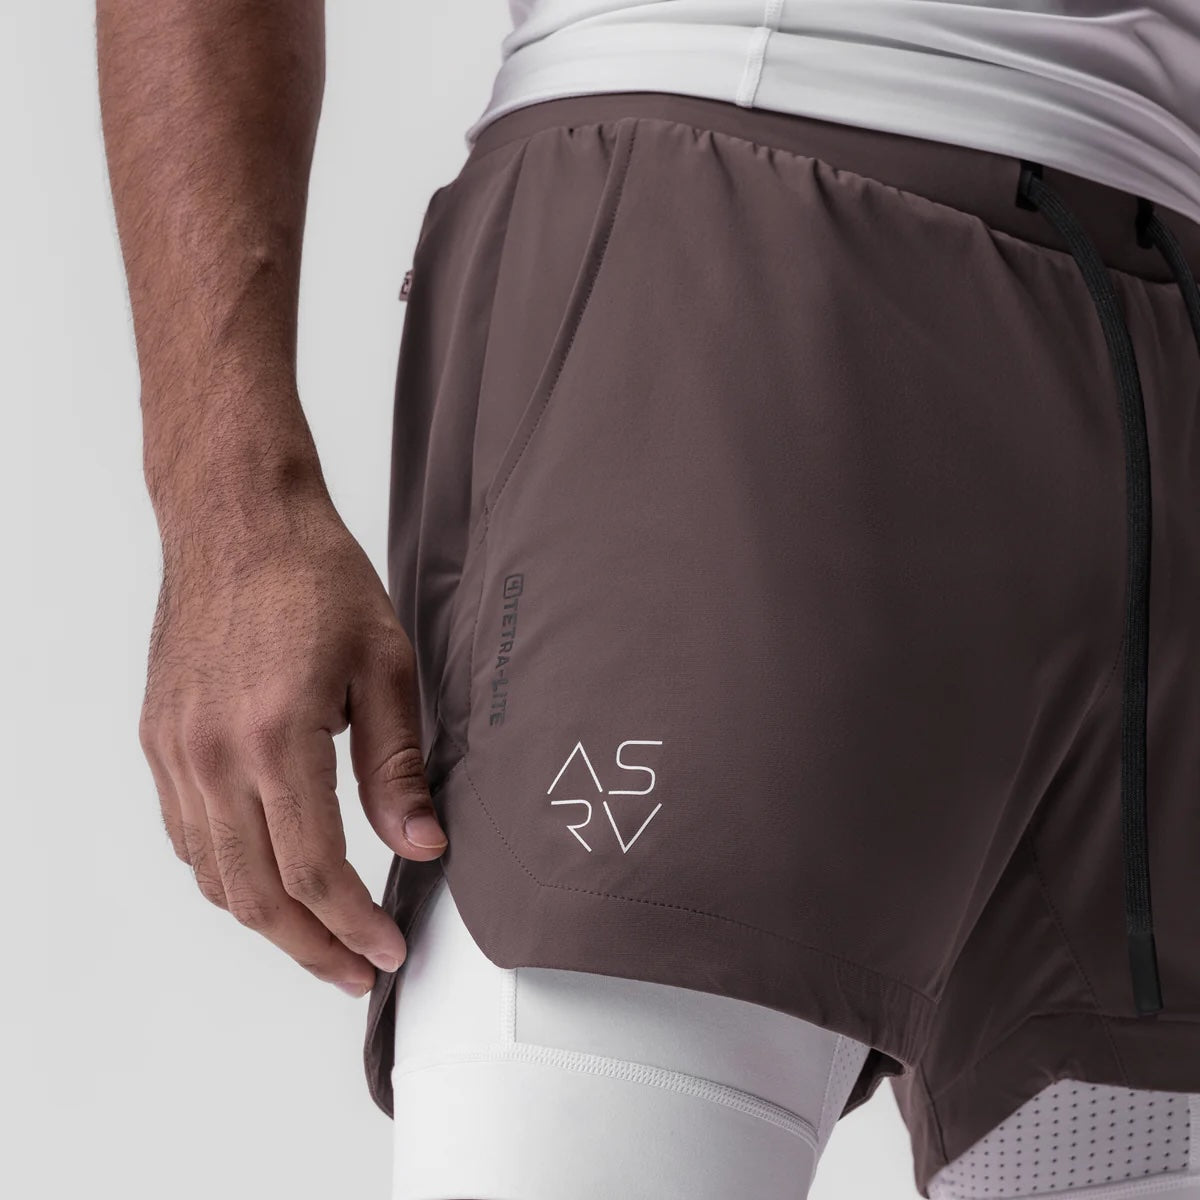 Tetra-Lite™ 5" Liner Shorts